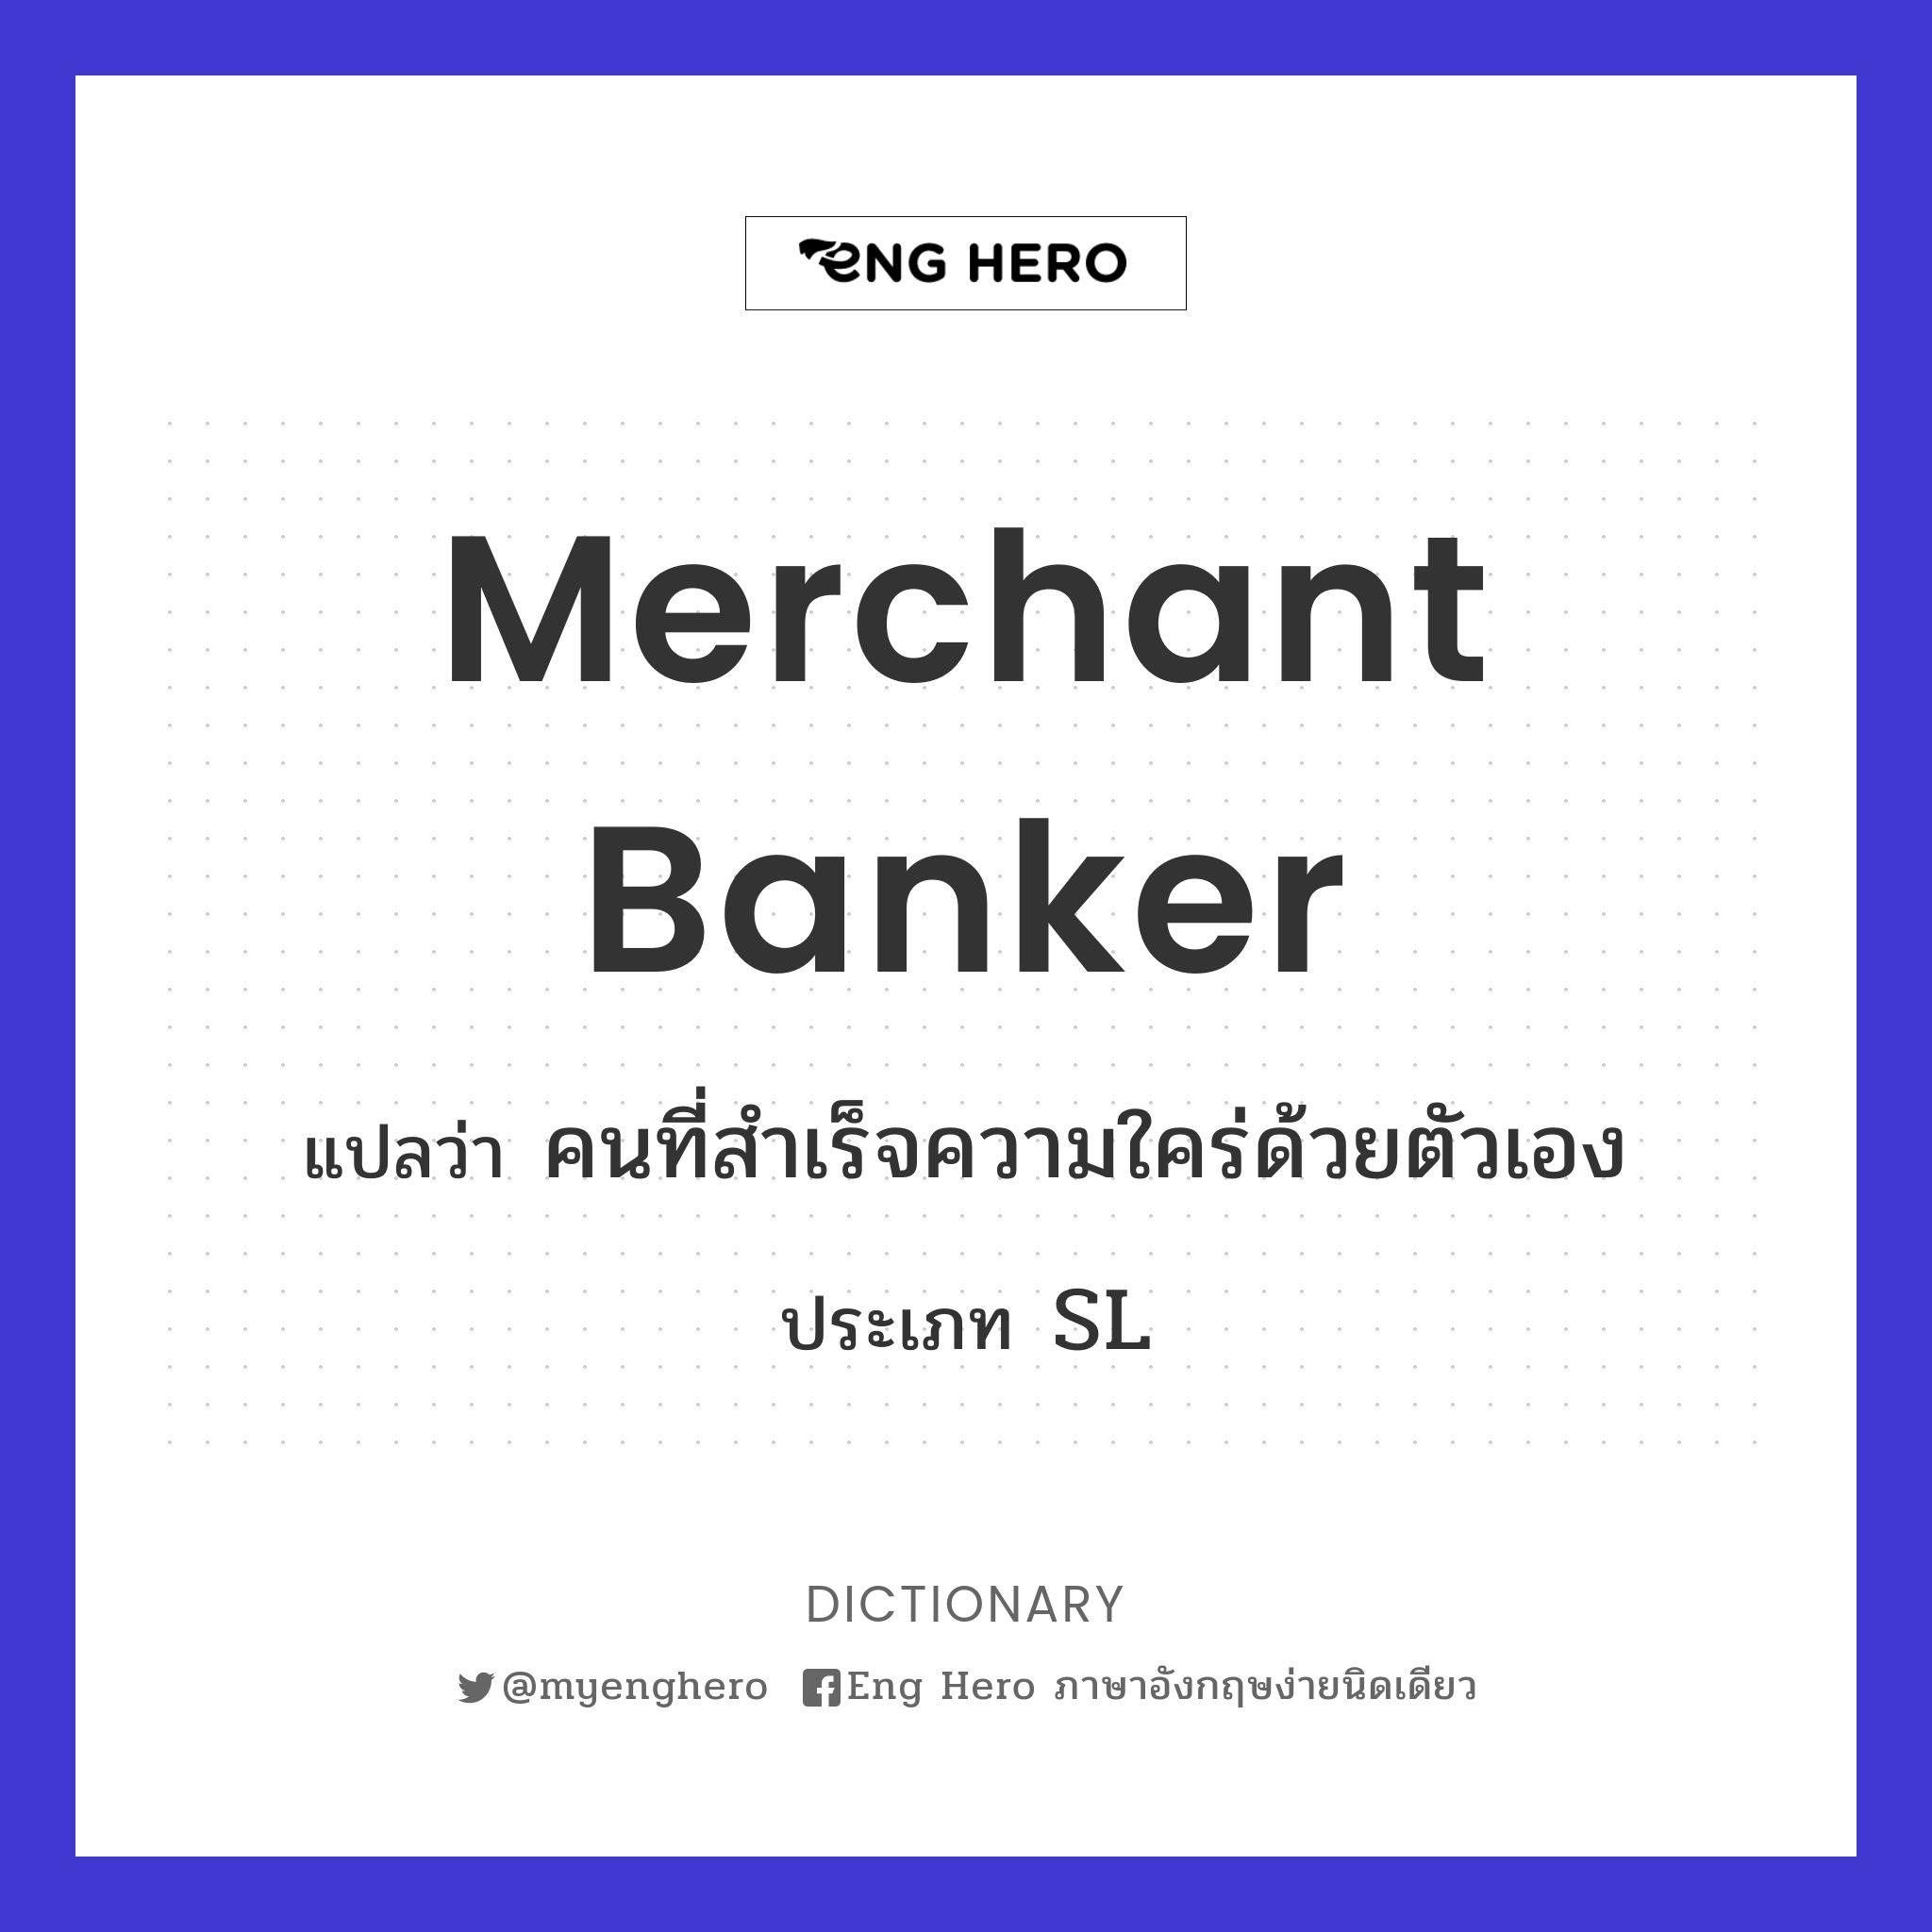 merchant banker